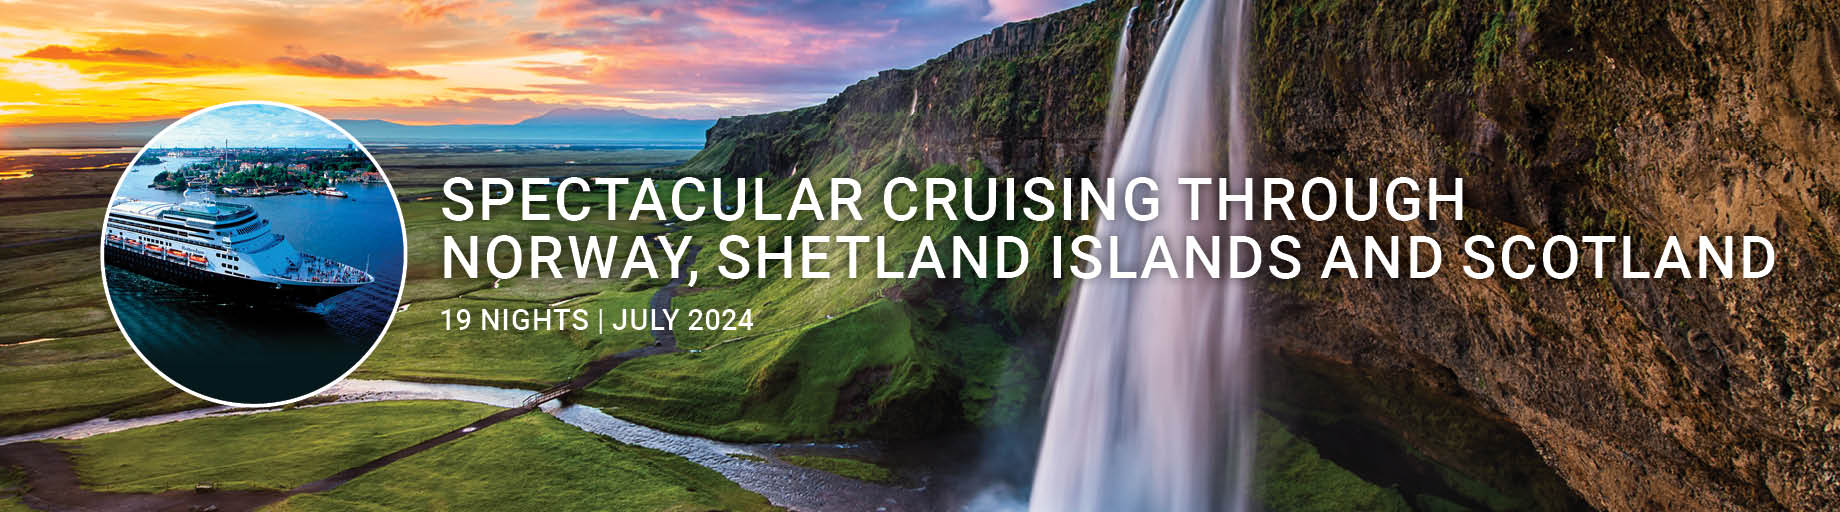 Iceland, Norway, Shetland Islands and Scotland Cruise